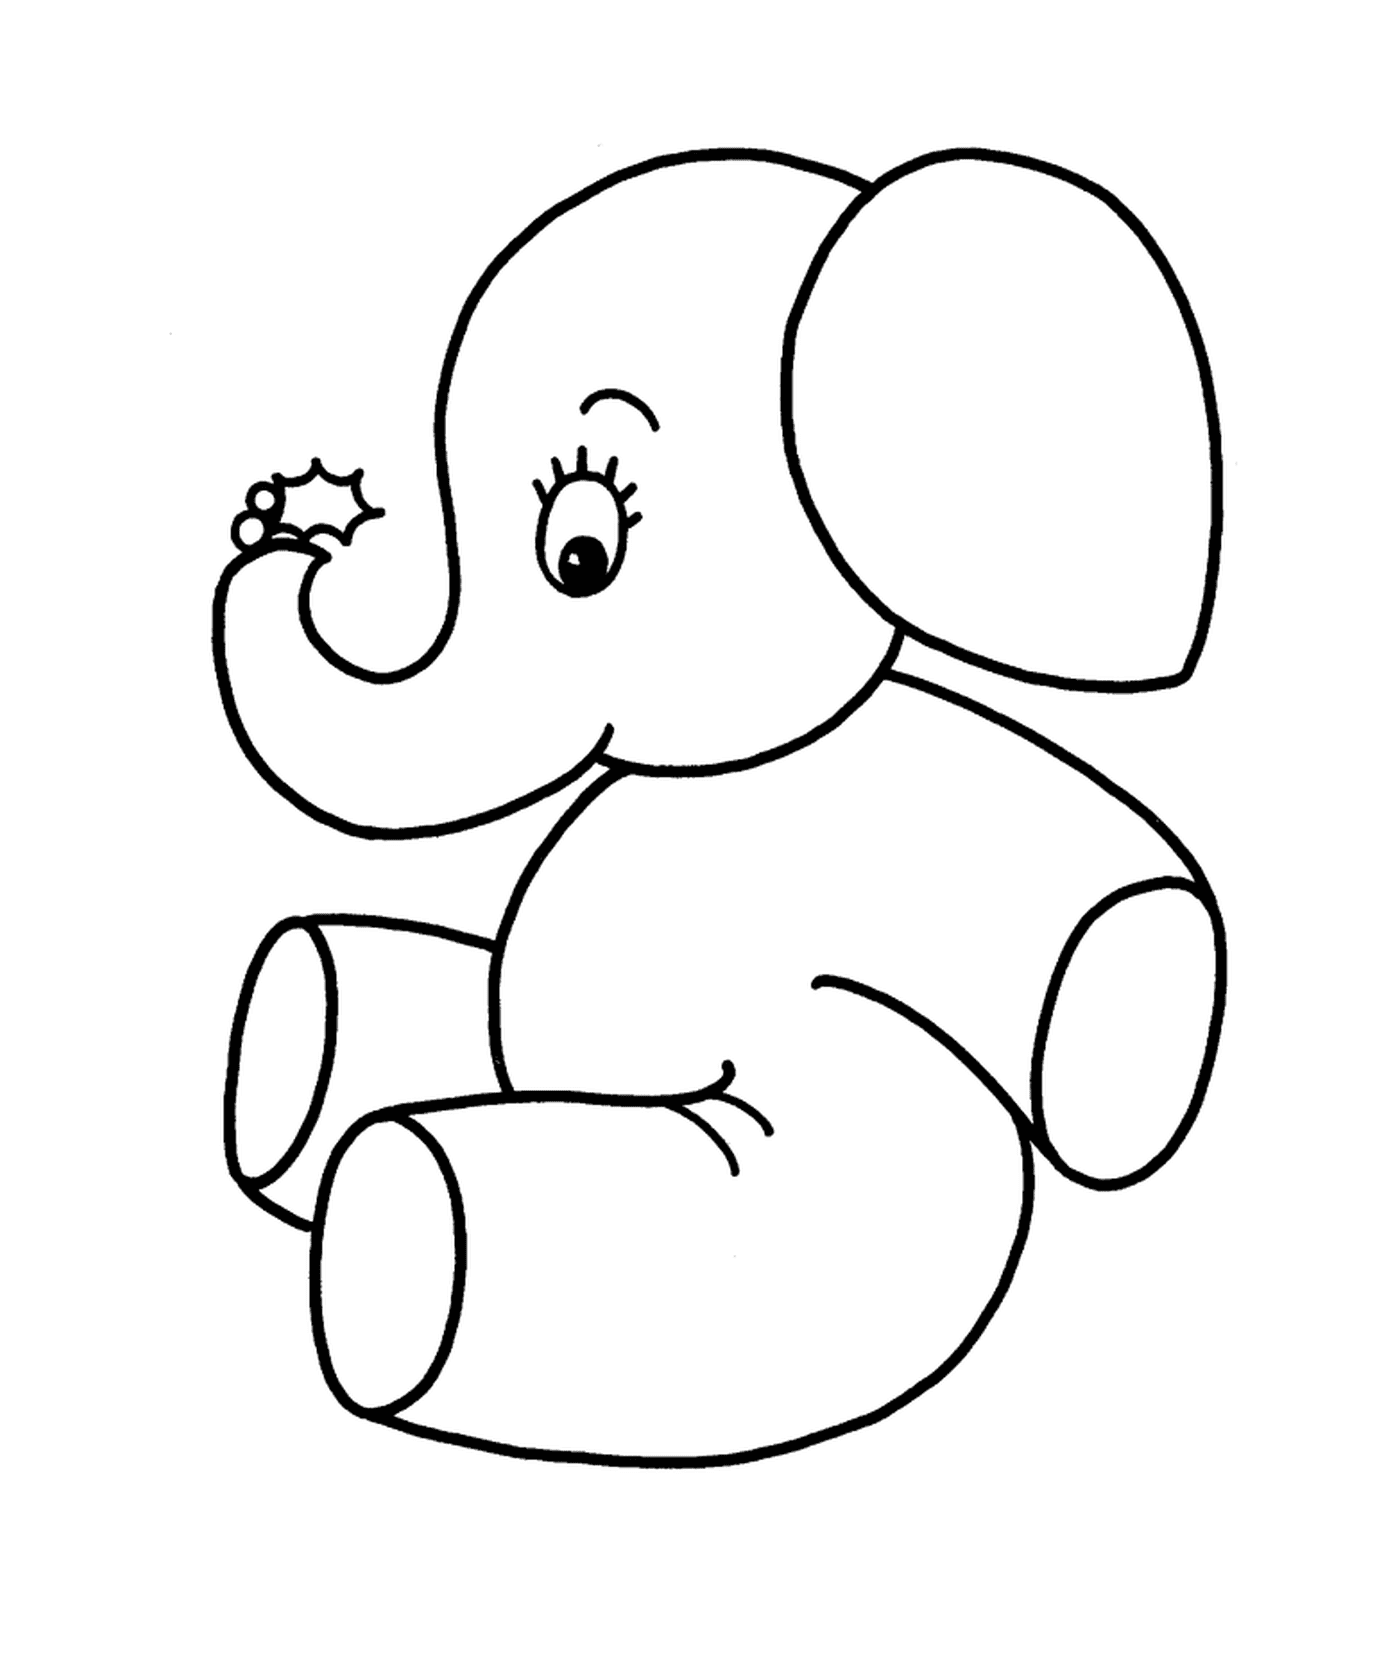  Ein Elefant sitzt 